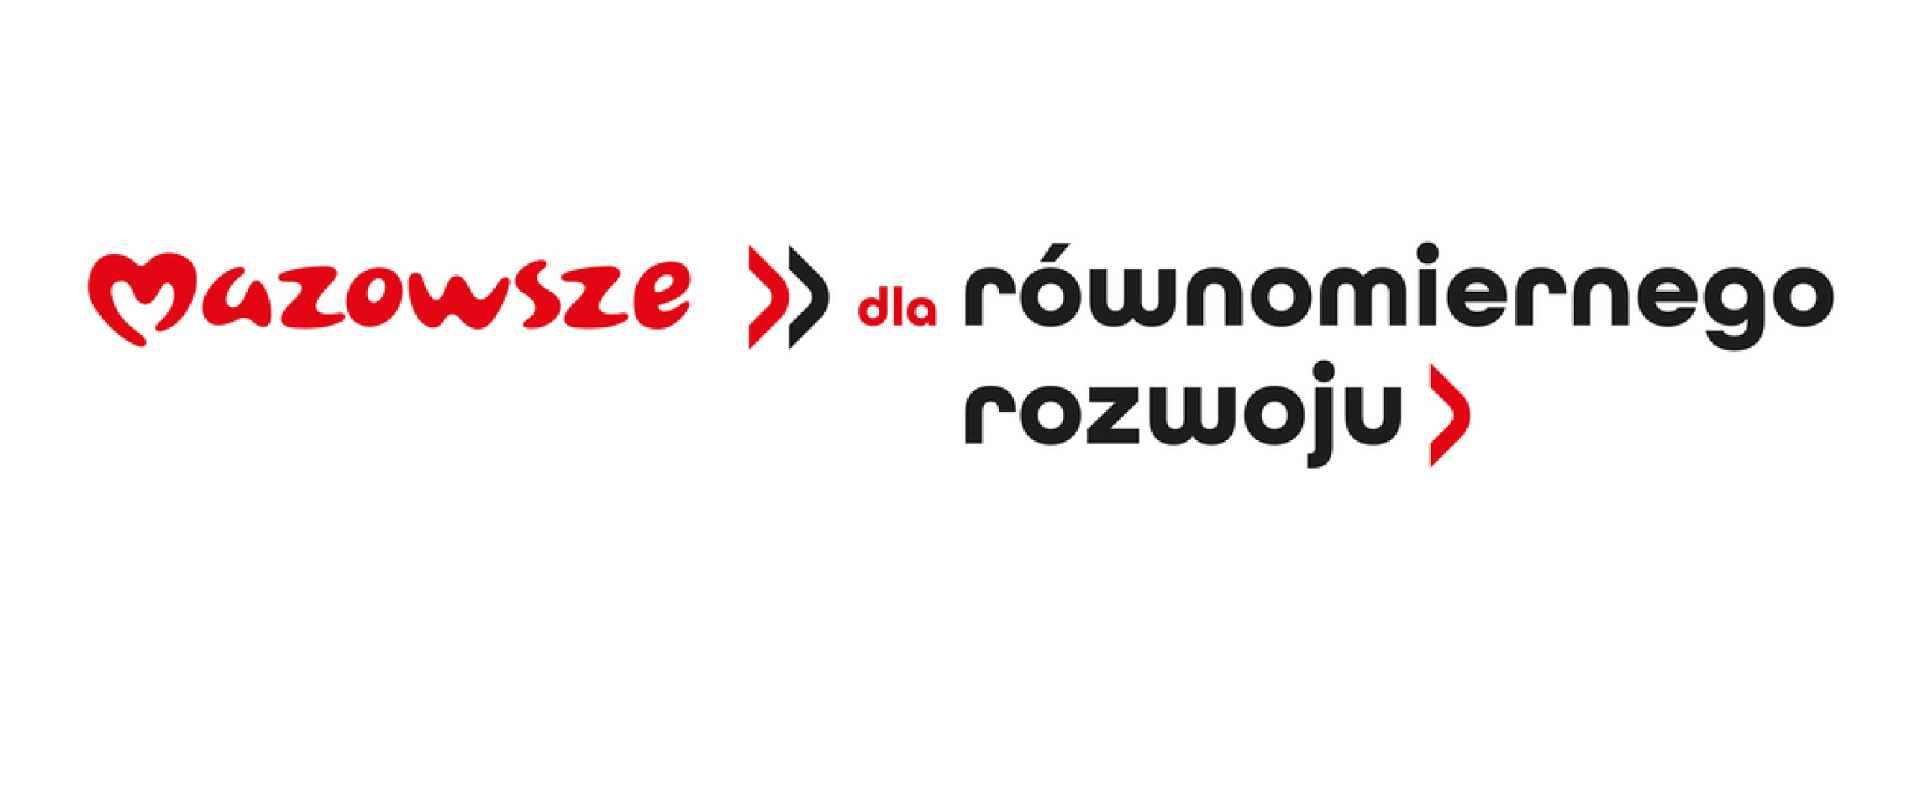 Grafika przedstawia tekst: Mazowsze >> dla równomiernego rozwoju> w kolorach czerwonym i czarnym na białym tle.